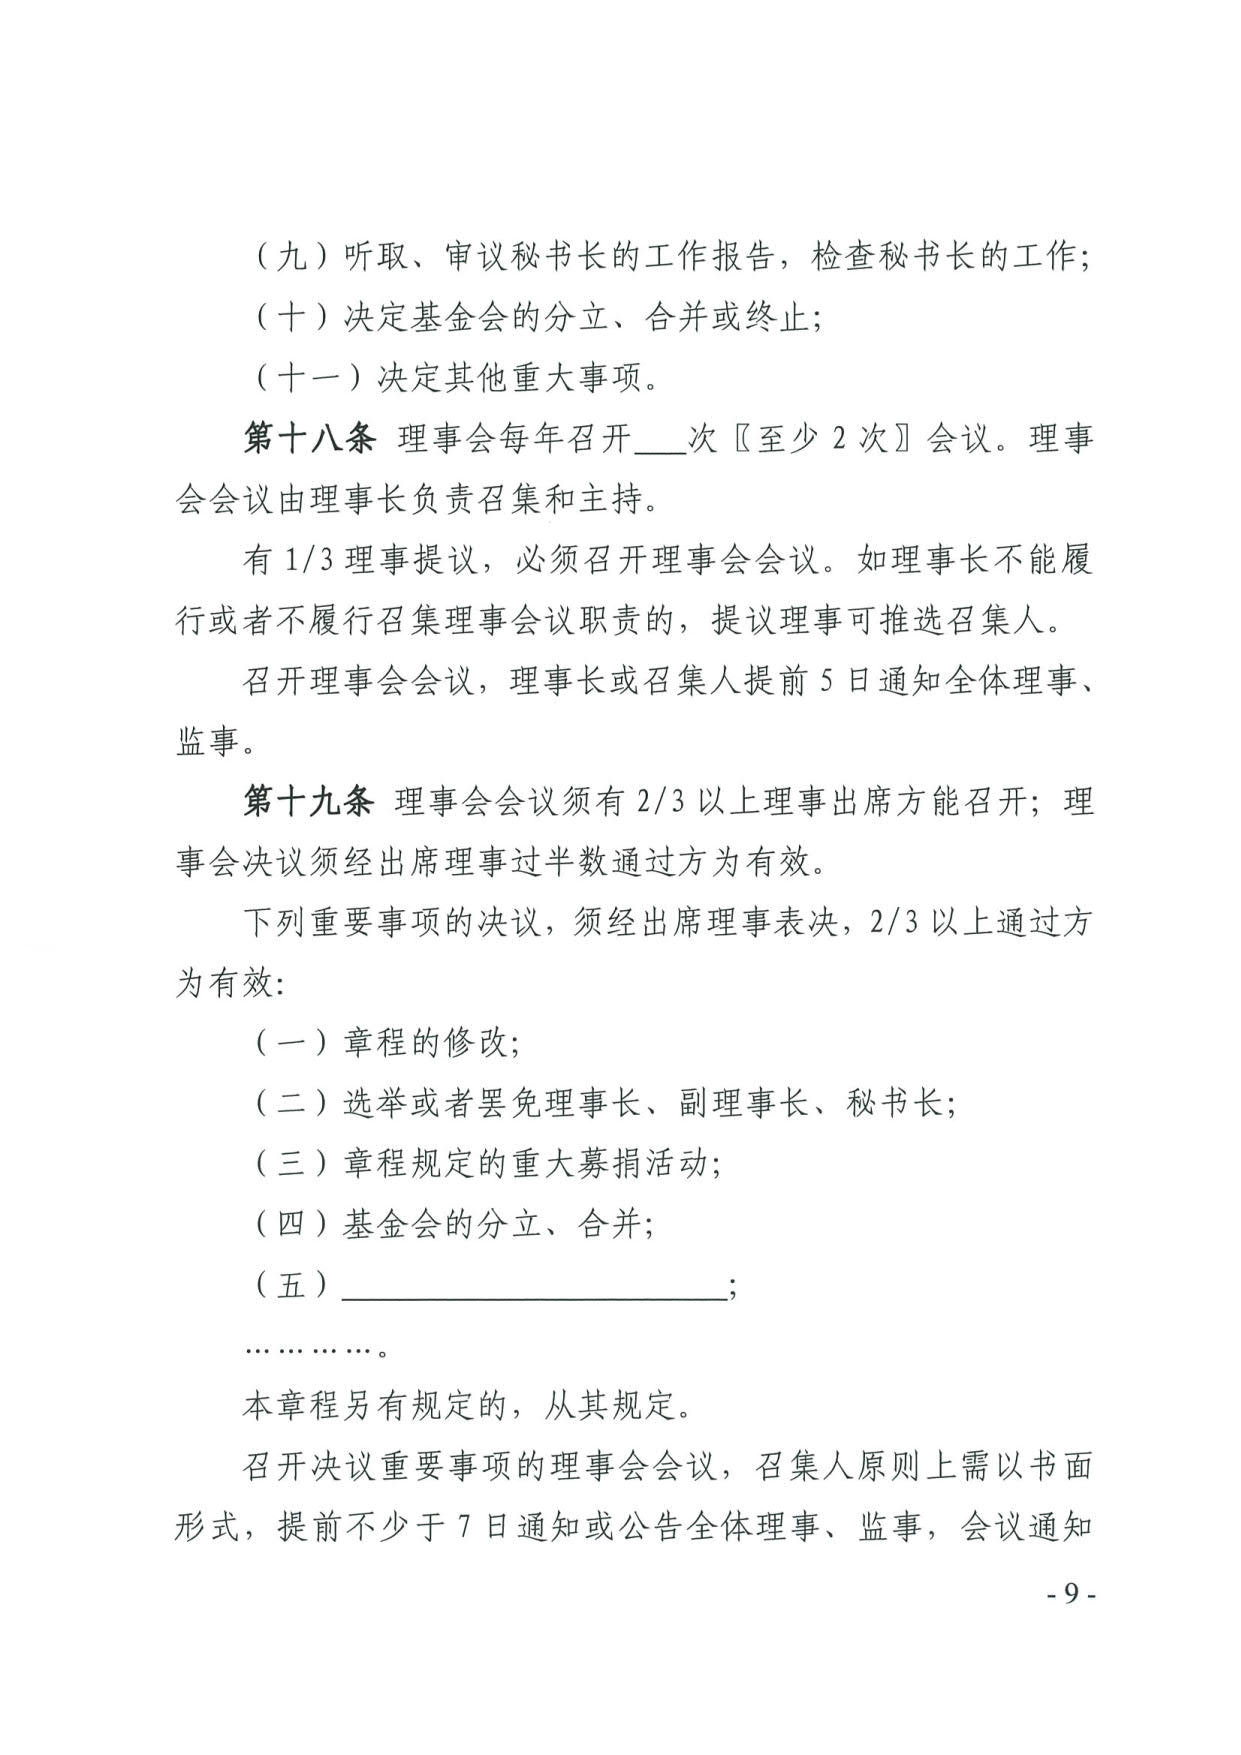 广东省民政厅关于印发《广东省基金会章程示范文本》的通知(4)_09.jpg